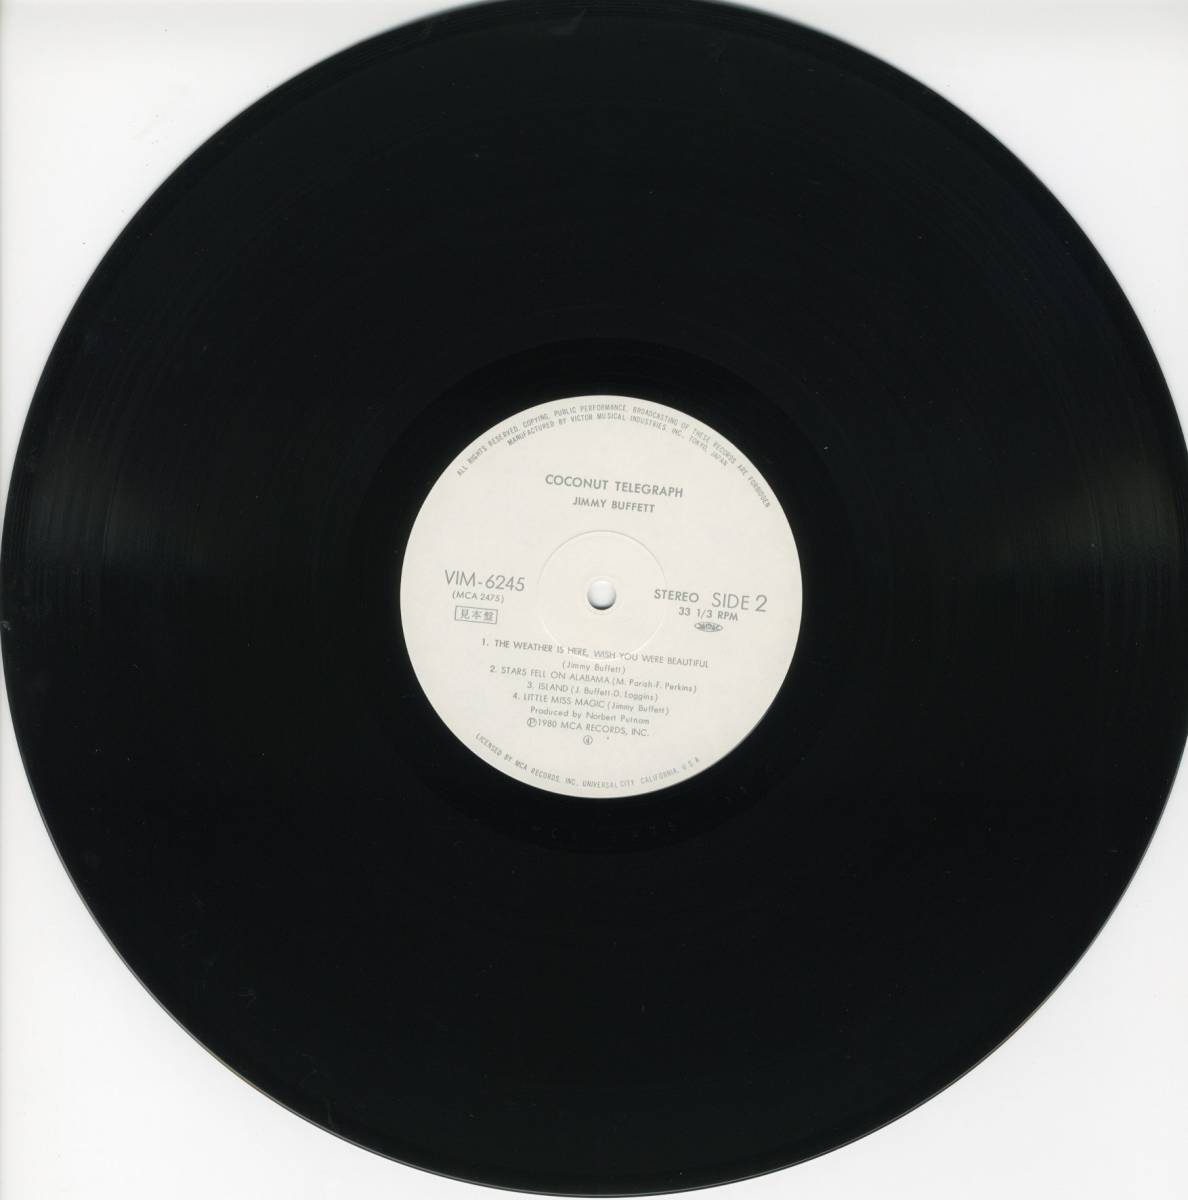 LP ジミー・バフェット / ココナット・テレグラフ 見本盤 JIMMY BUFFETT / COCONUT TELEGRAPH  美盤 Y-167の画像6